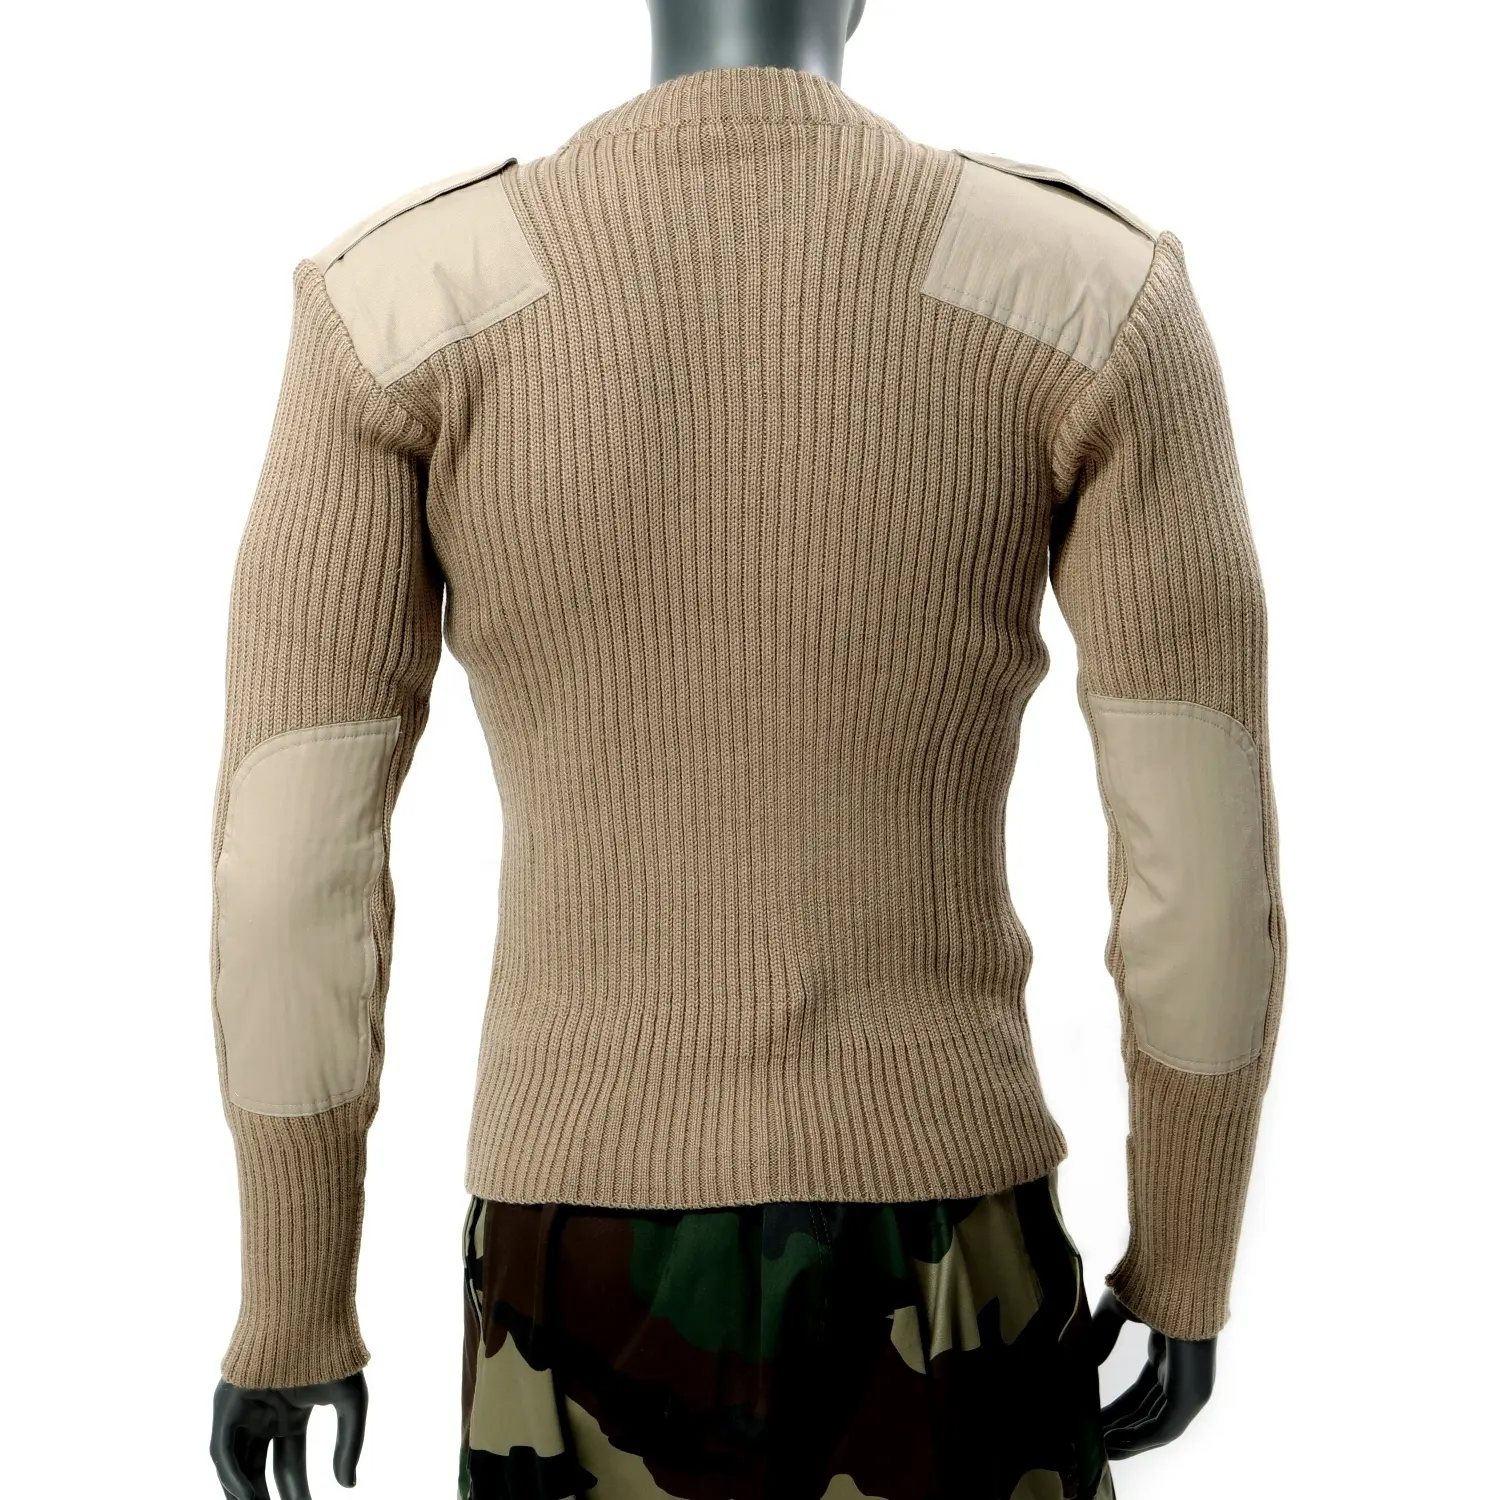 아크릴 밀 사양 스웨터 GI 표준 전투 풀오버 전술 스웨터 니트 올리브 울과 정글 그린